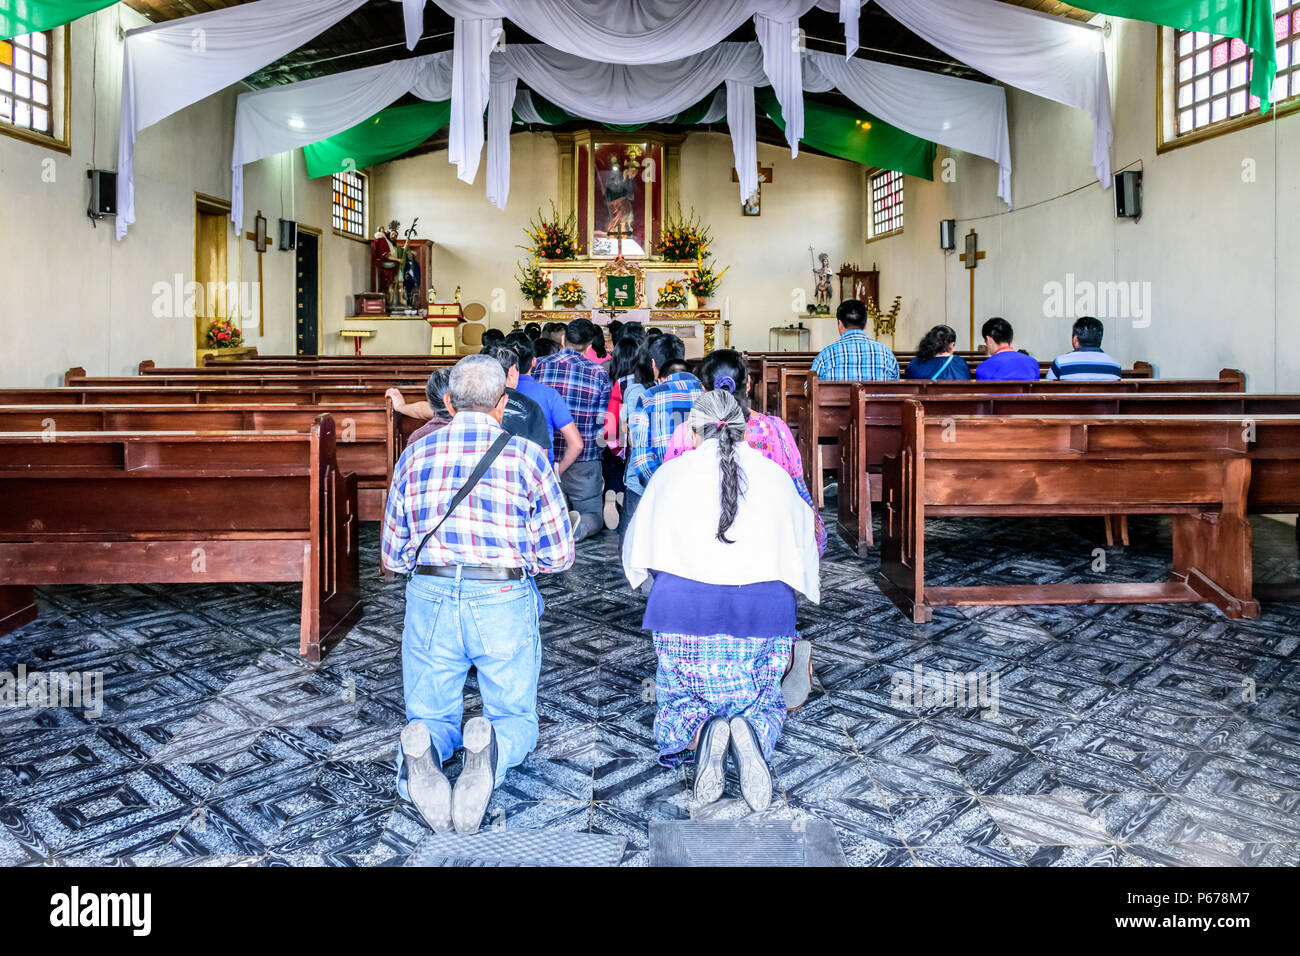 San Cristobal El Alto, Guatemala - Ottobre 22, 2017: locali inginocchiati in preghiera nella chiesa del villaggio vicino a UNESCO World Heritage Site di Antigua Foto Stock